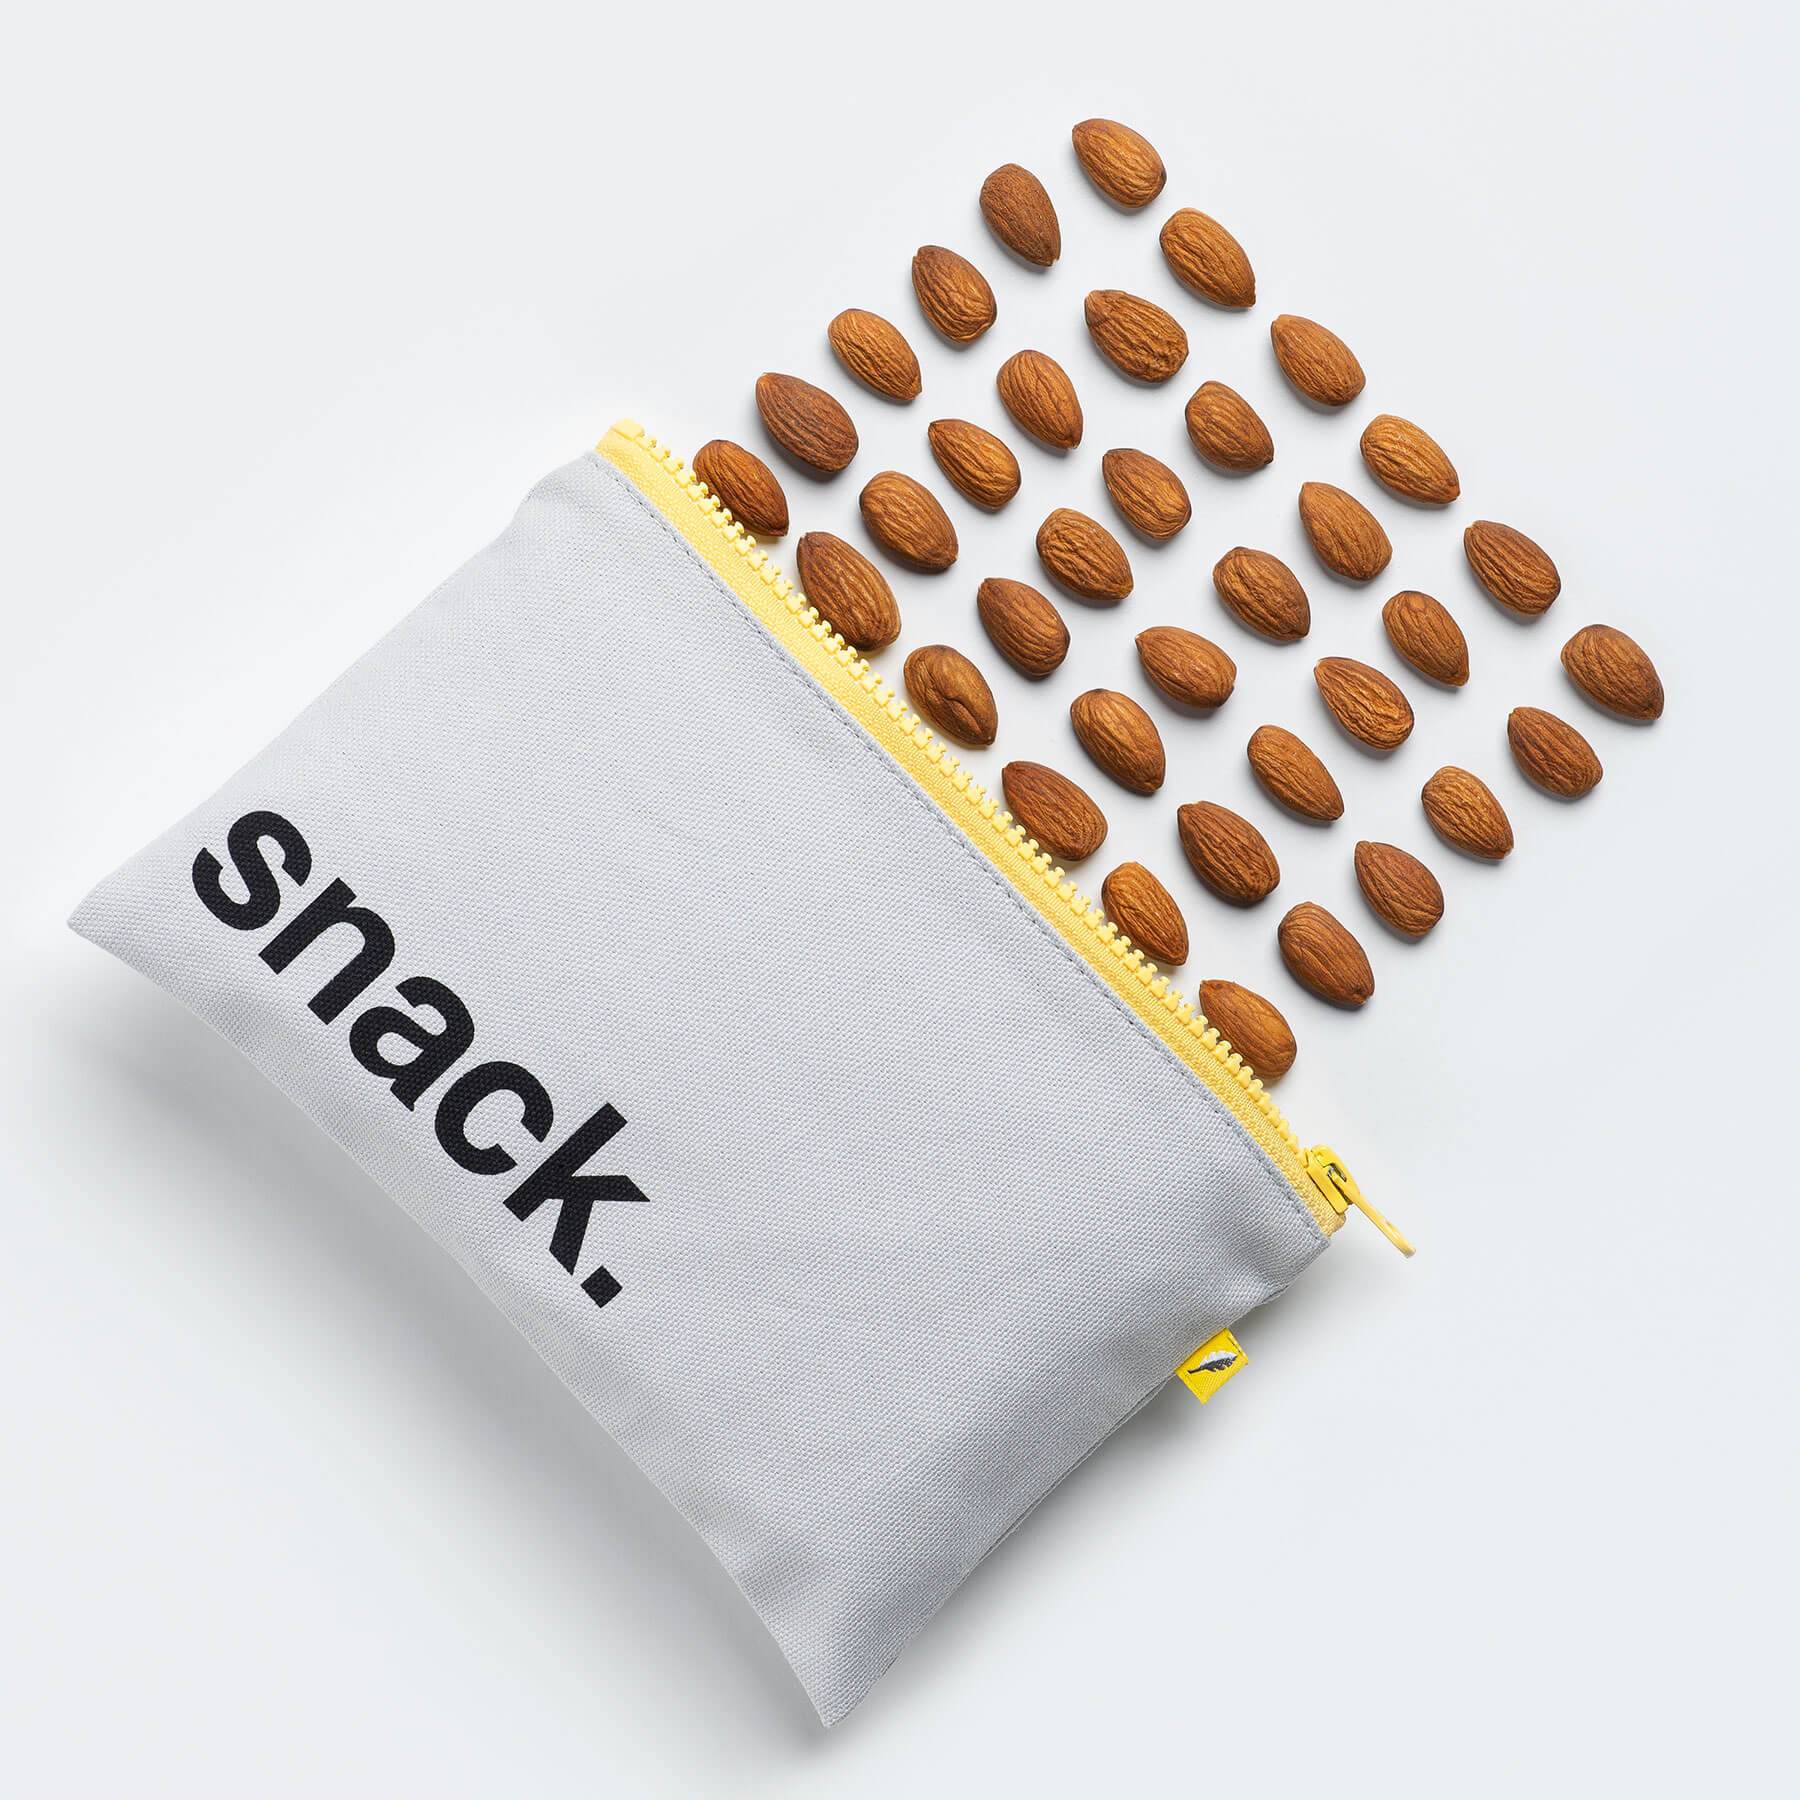 Snack' Black (Snack Size) Snack Pack